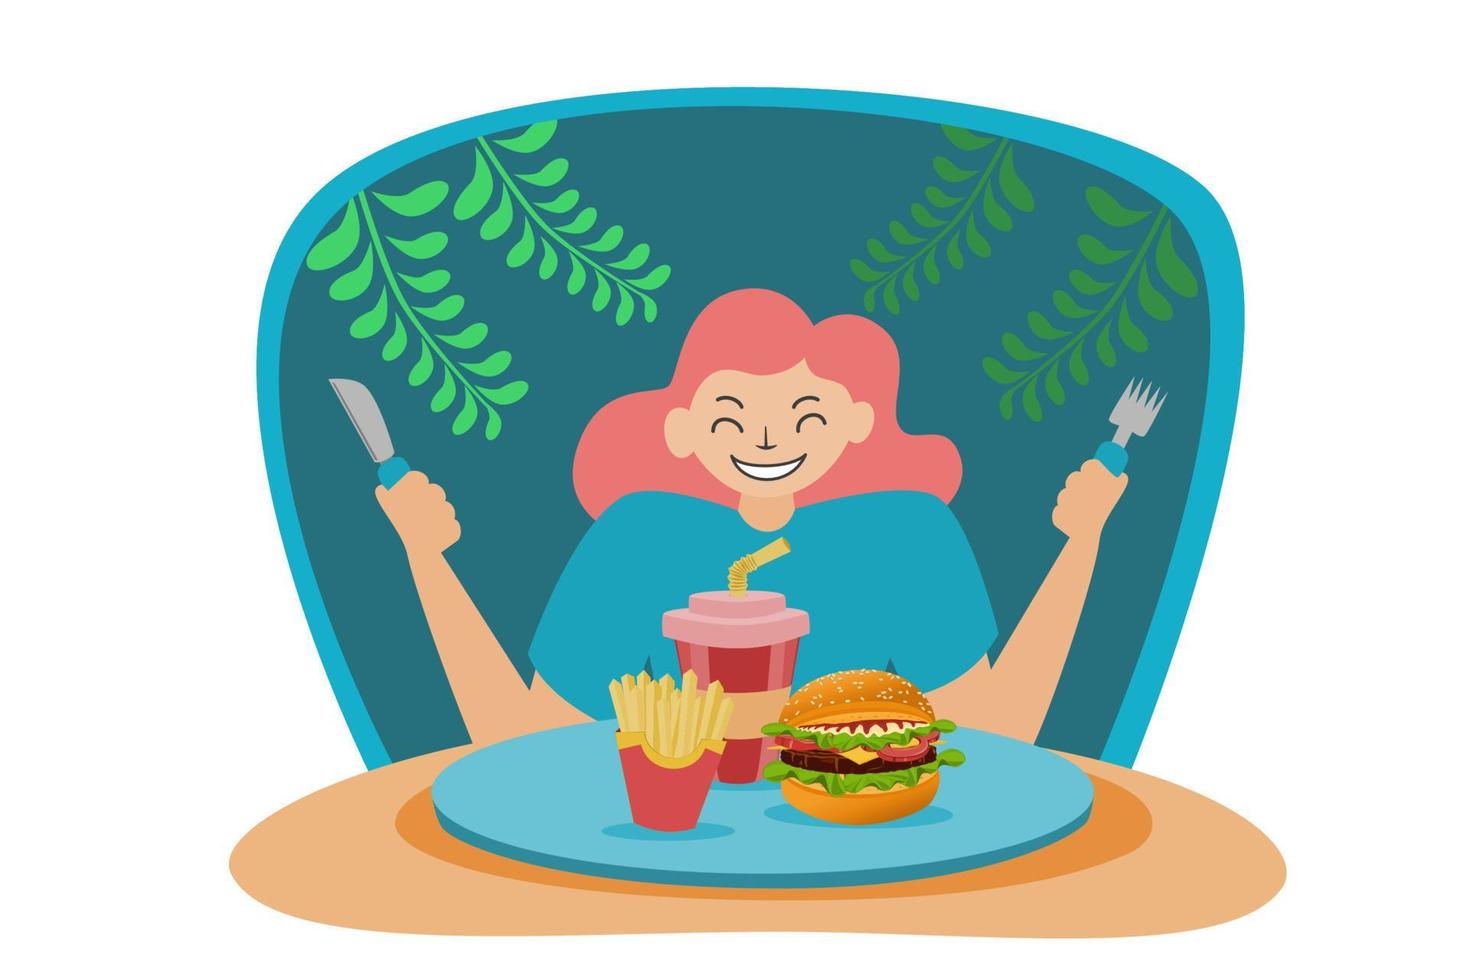 ilustração de uma pessoa se preparando para comer junk food, como hambúrgueres e batatas fritas e água vetor